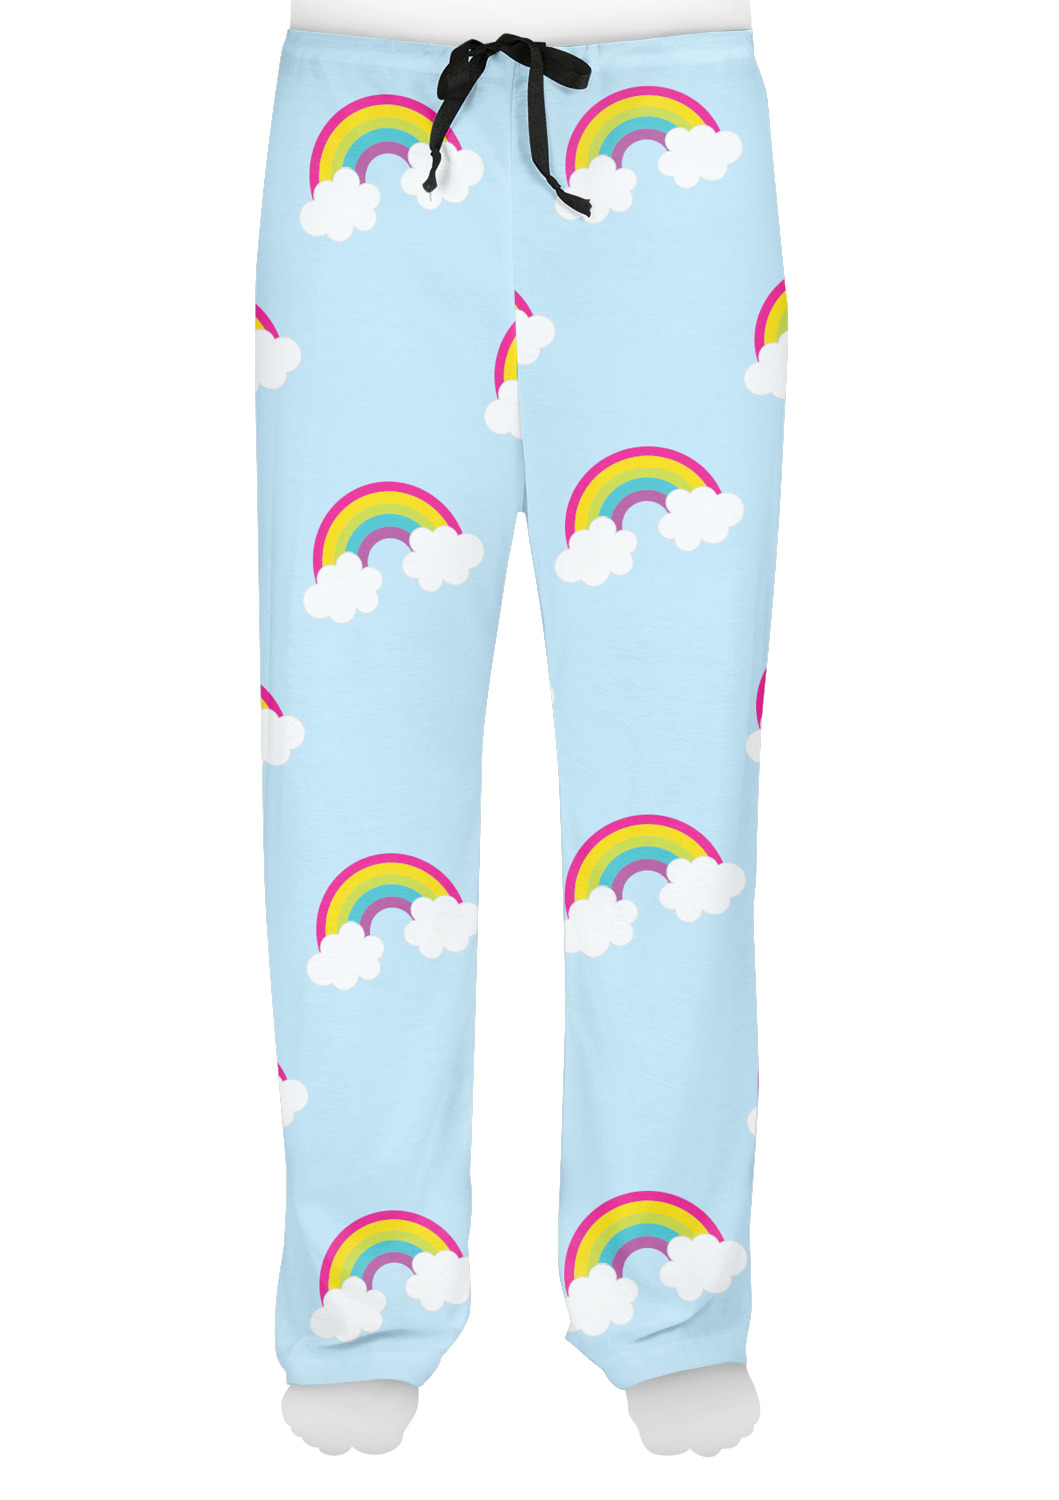 Unicorn Pajama Pants